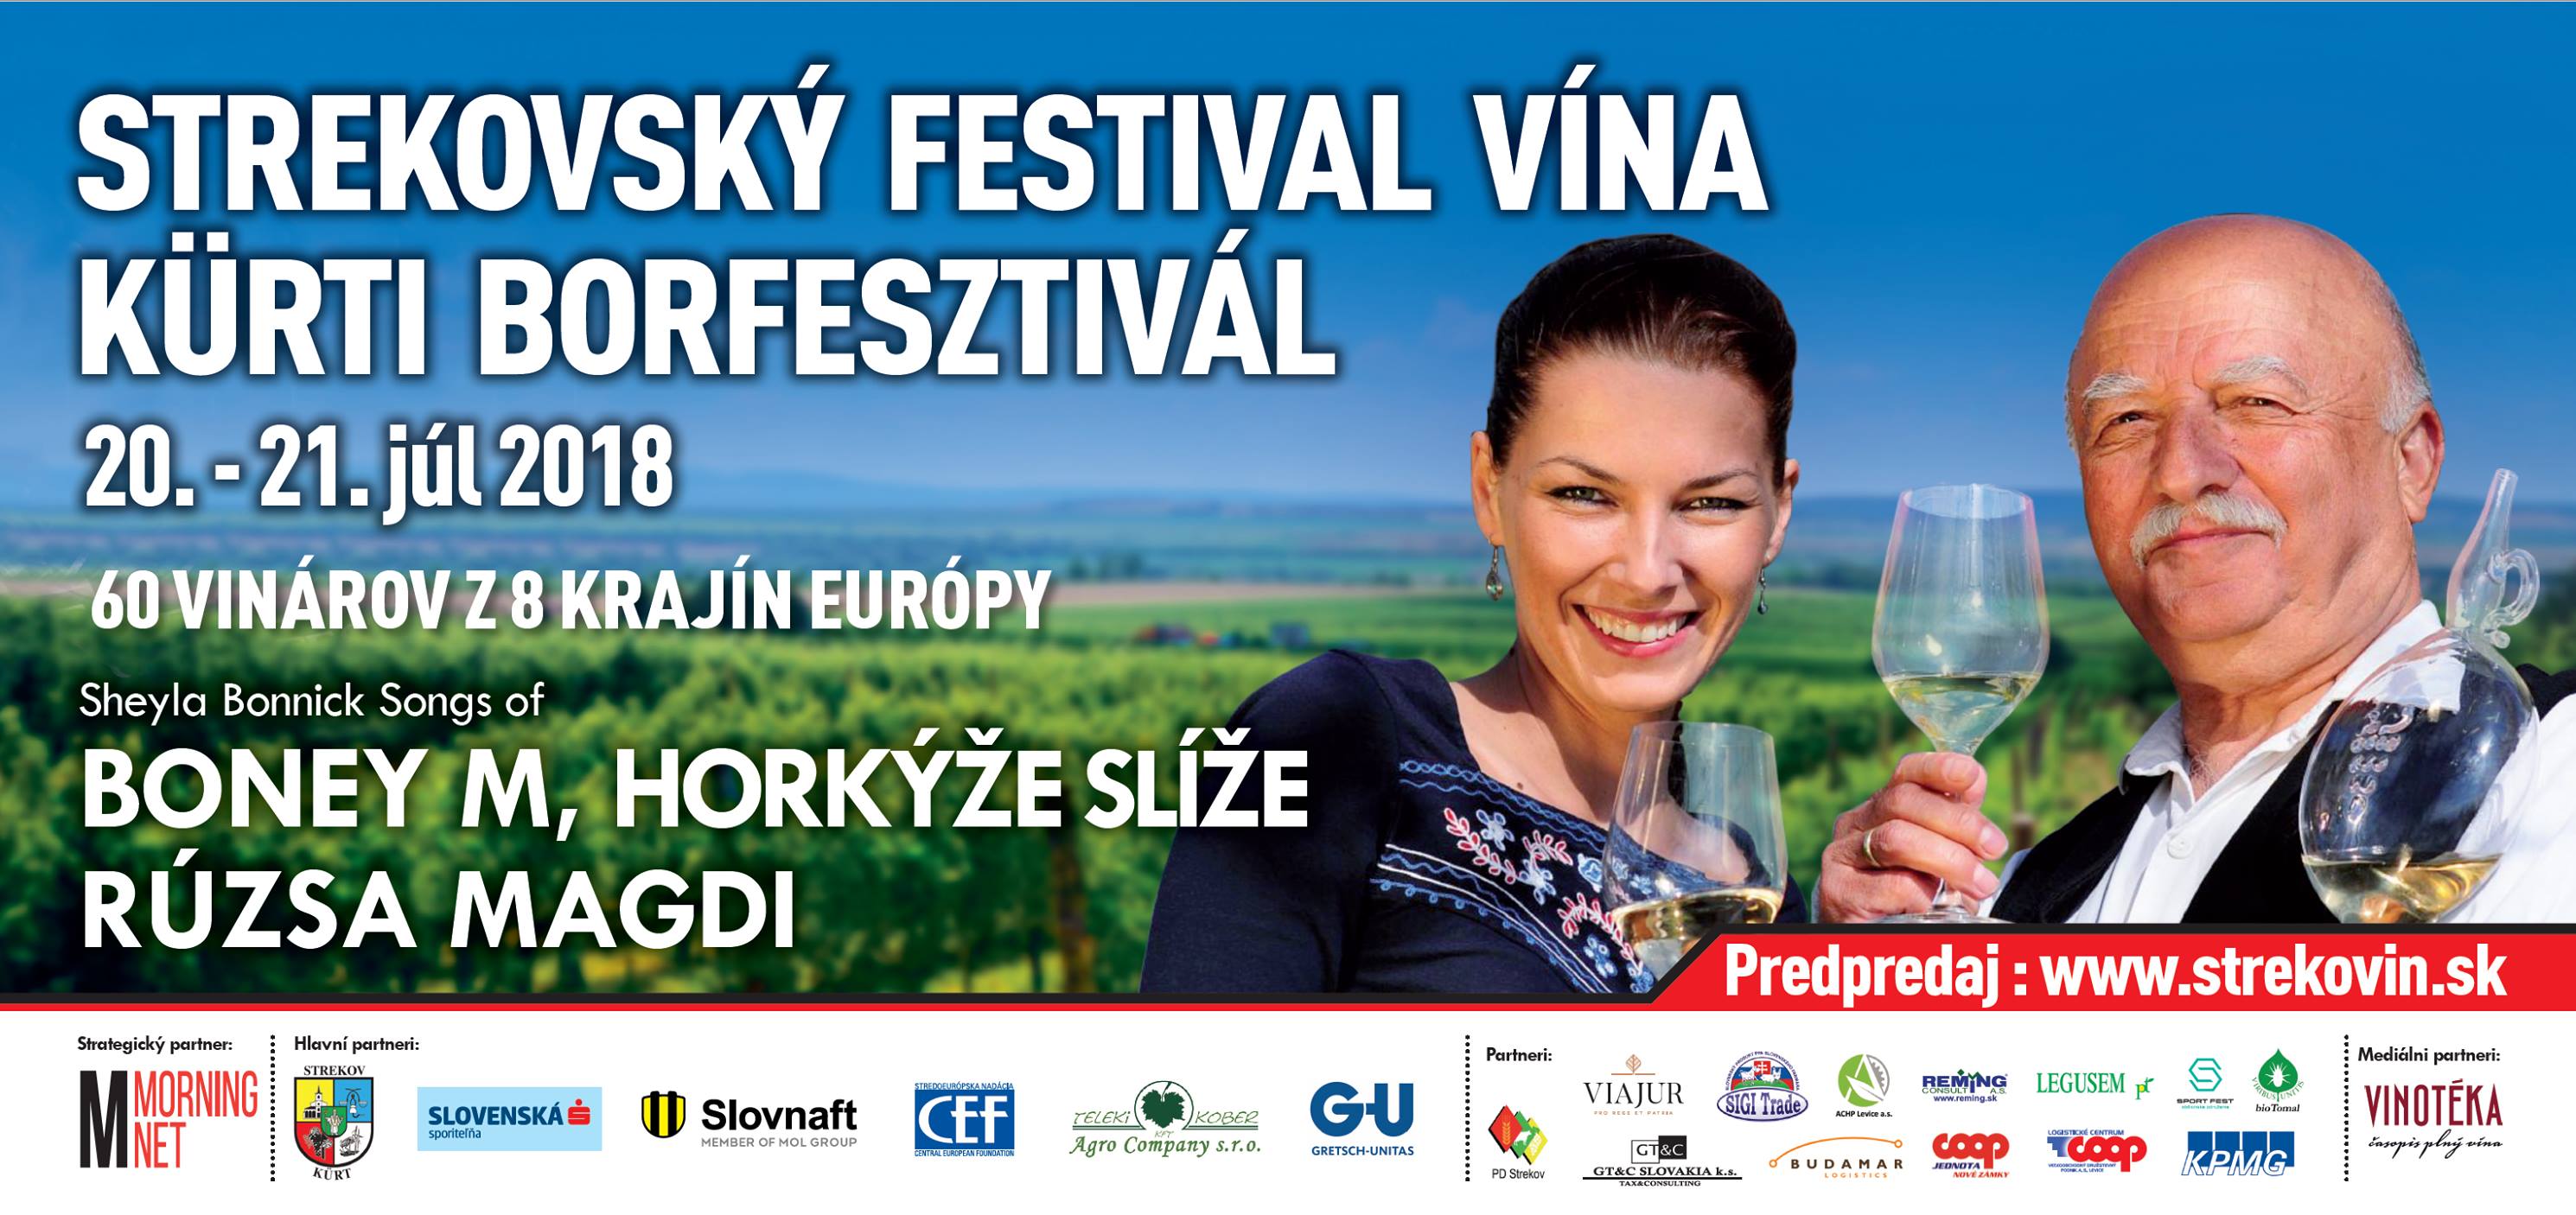 Strekovsk festival vna 2018 - XI. ronk